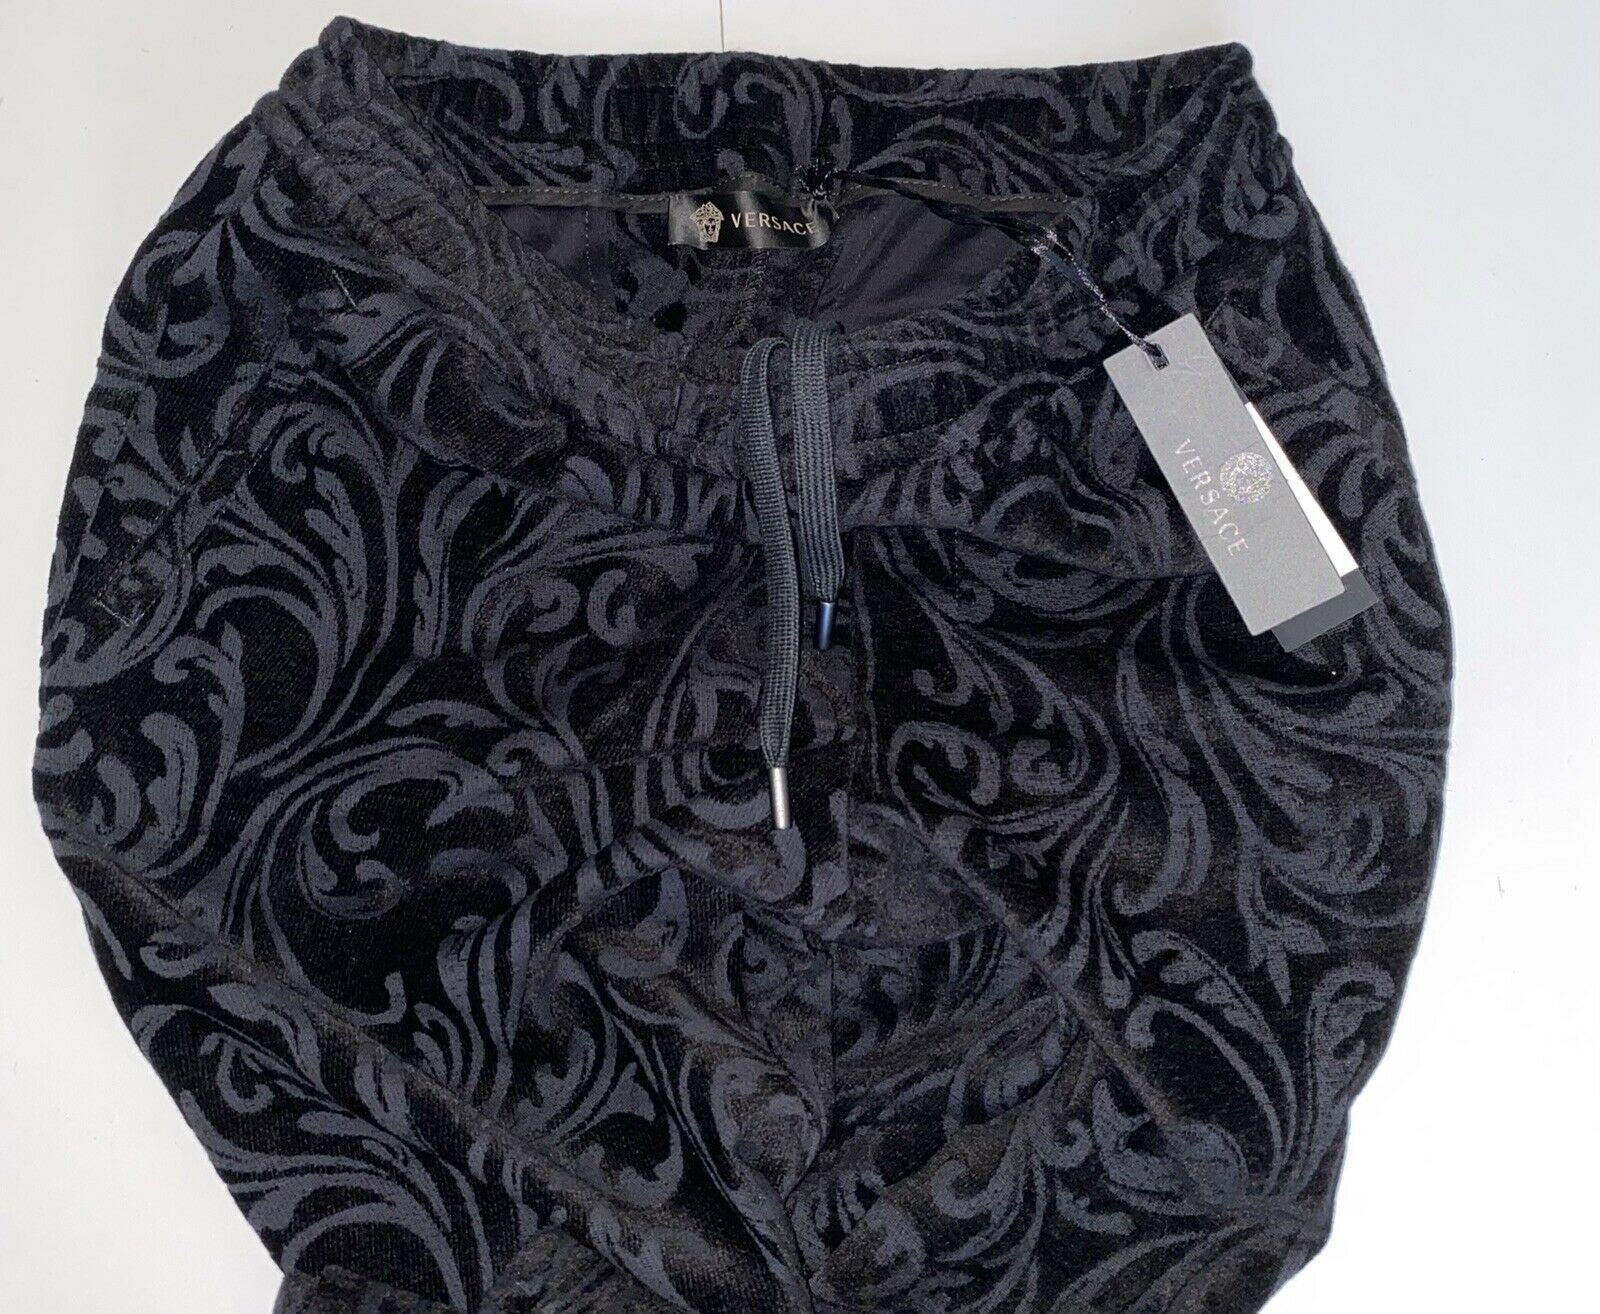 Черные мужские брюки для спортивной одежды Versace NWT, средний размер, 975 долларов, сделано в Италии, A79524